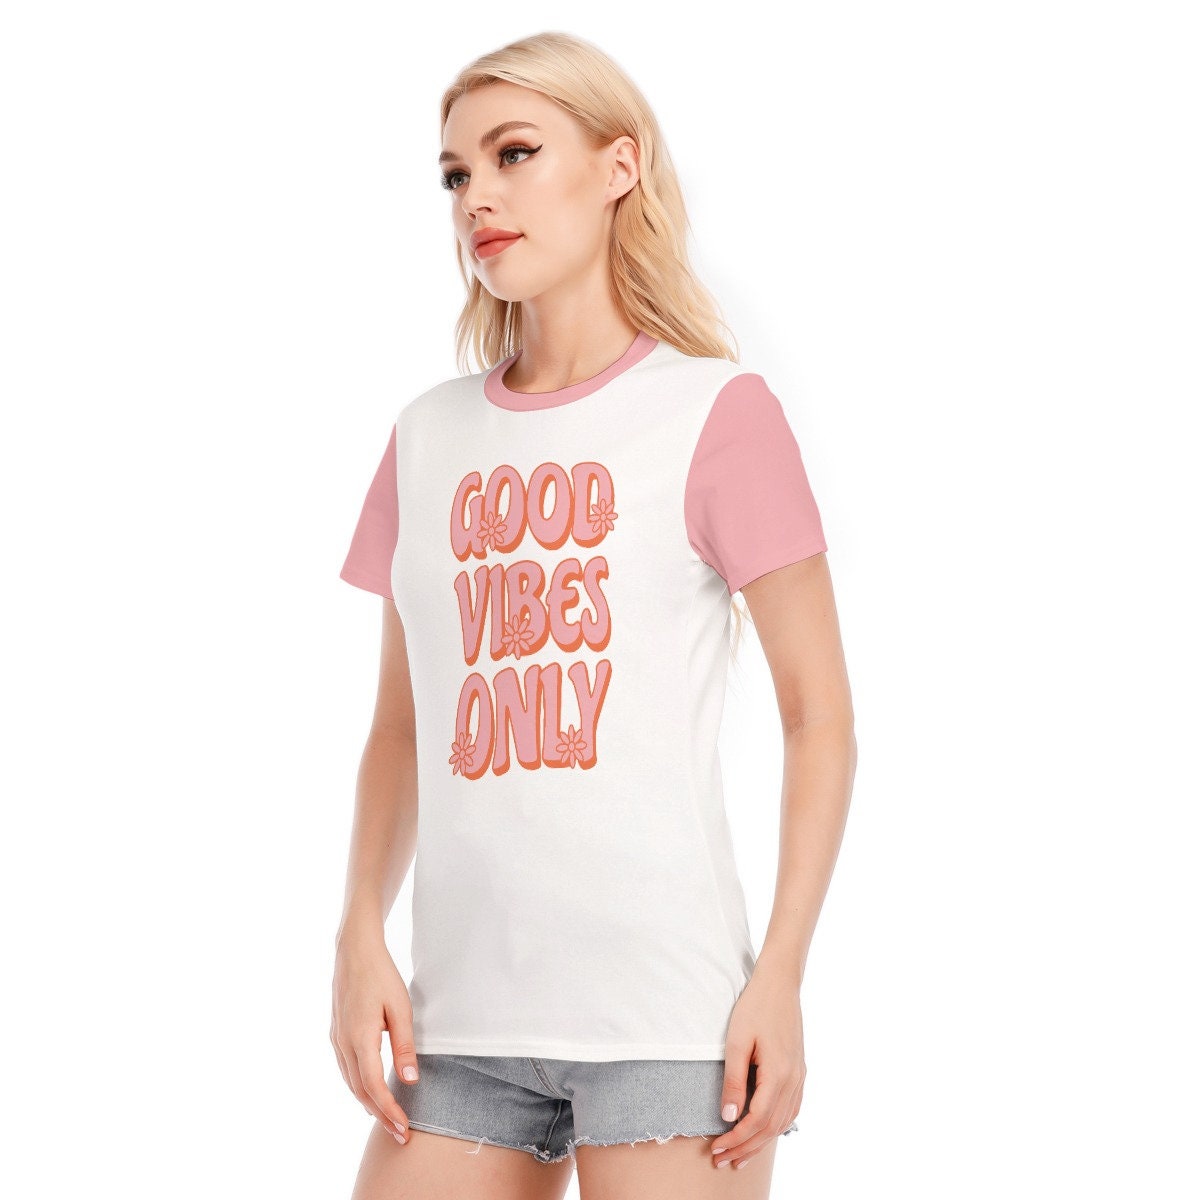 Retro T-shirt, Words Tshirts, Vintage Words Tshirt, Pink Words T-shirt, Hippie Tshirt Women, Vintage Style Tshirt, White Pink T-shirt